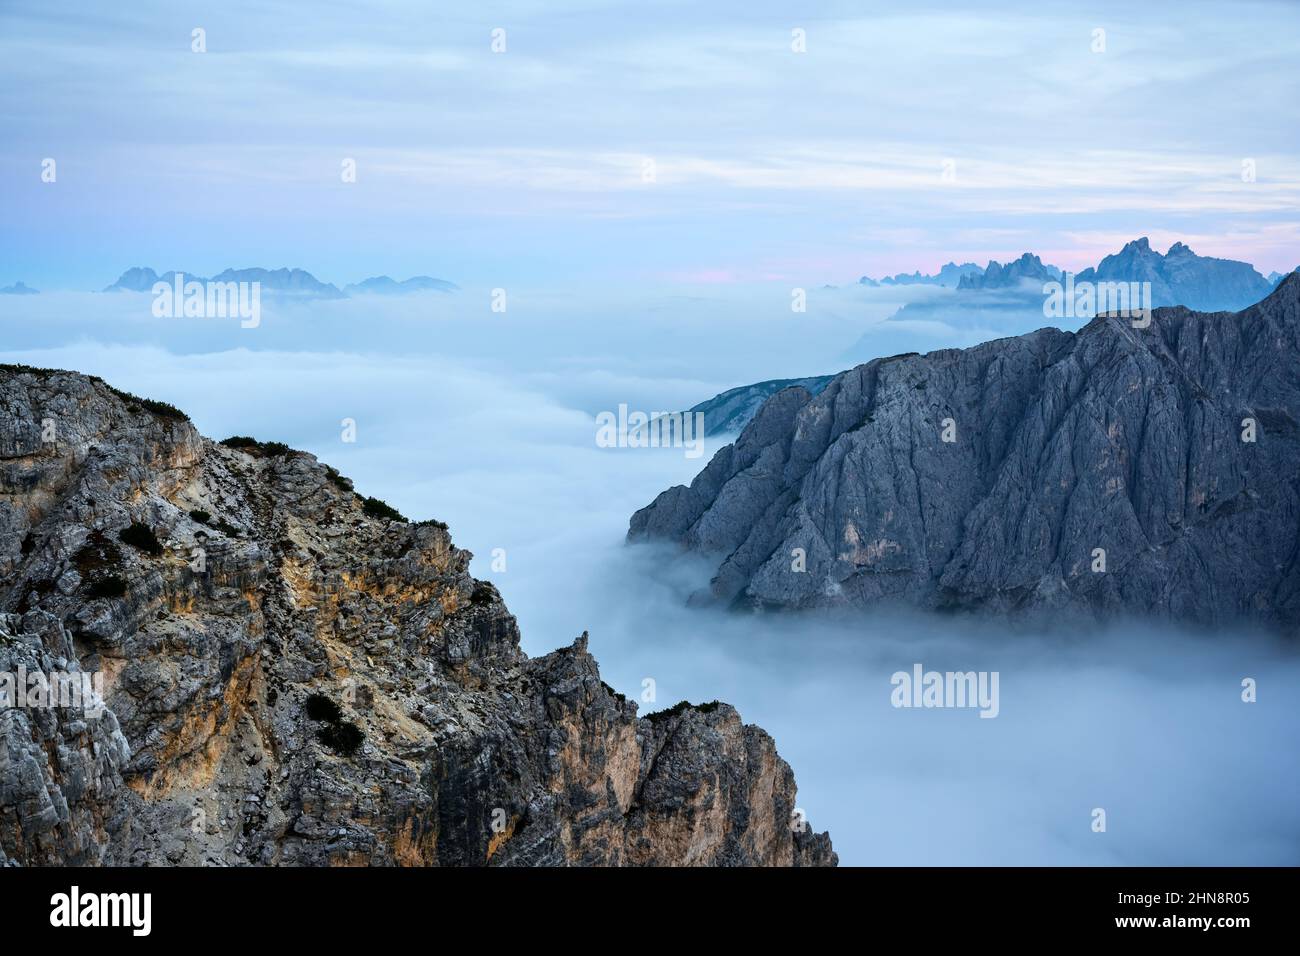 Unglaubliche Sonnenaufgangslandschaft mit fließendem Nebel und dramatischem Himmel in den Dolomiten. Lage Auronzo rifugio im Nationalpark Tre Cime di Lavaredo, Dolomiten, Trentino-Südtirol, Italien Stockfoto